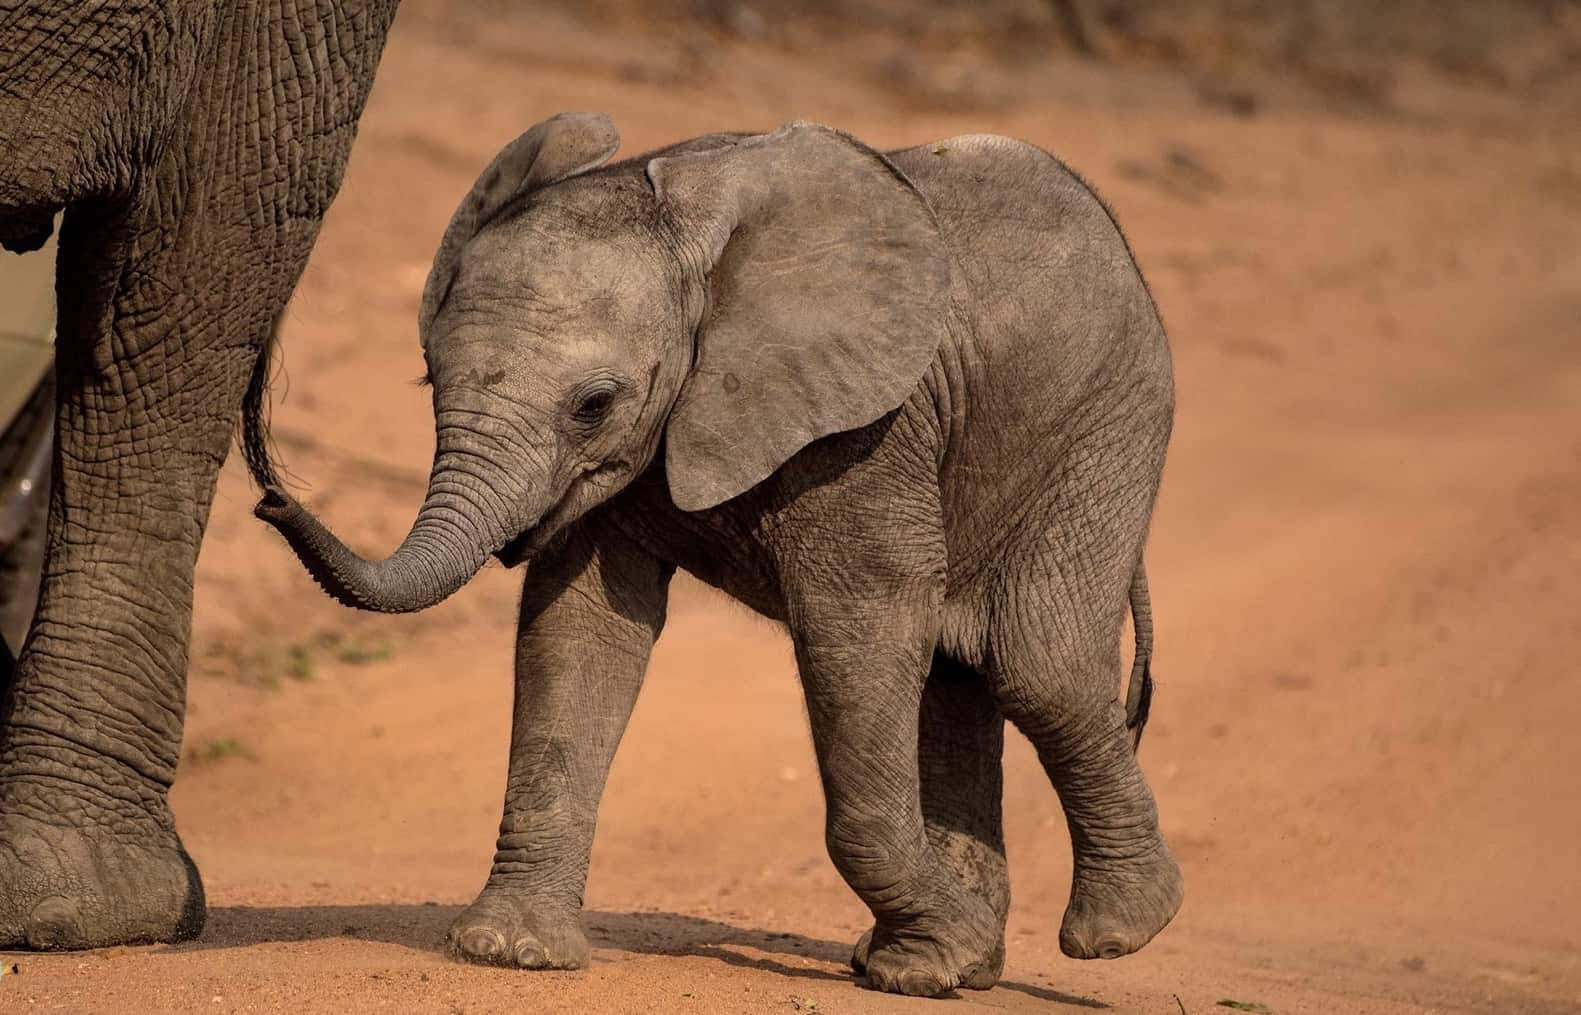 Imagencautivadora De Un Bebé Elefante.